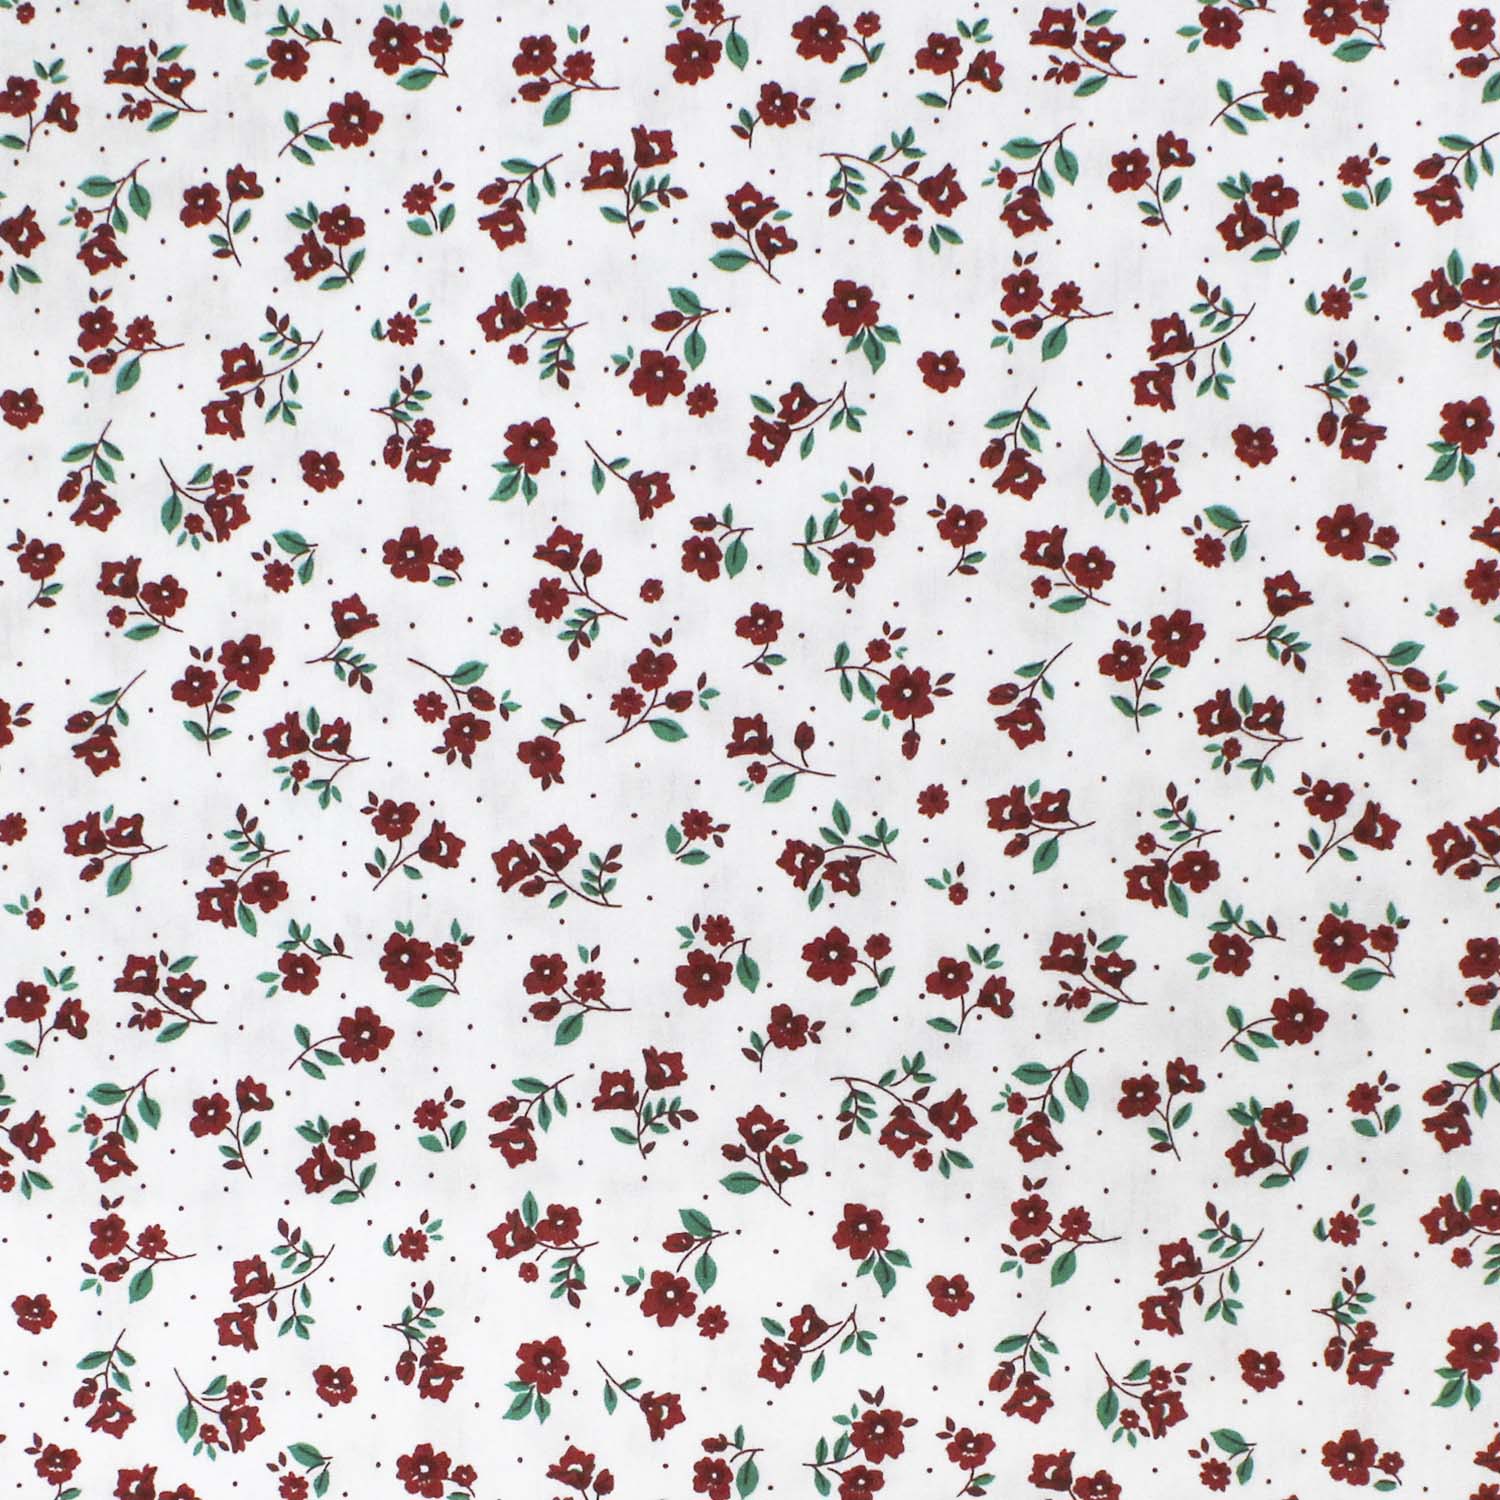 tecido-tricoline-flores-pequenas-vermelhas-fundo-branco-della-aviamentos-10959